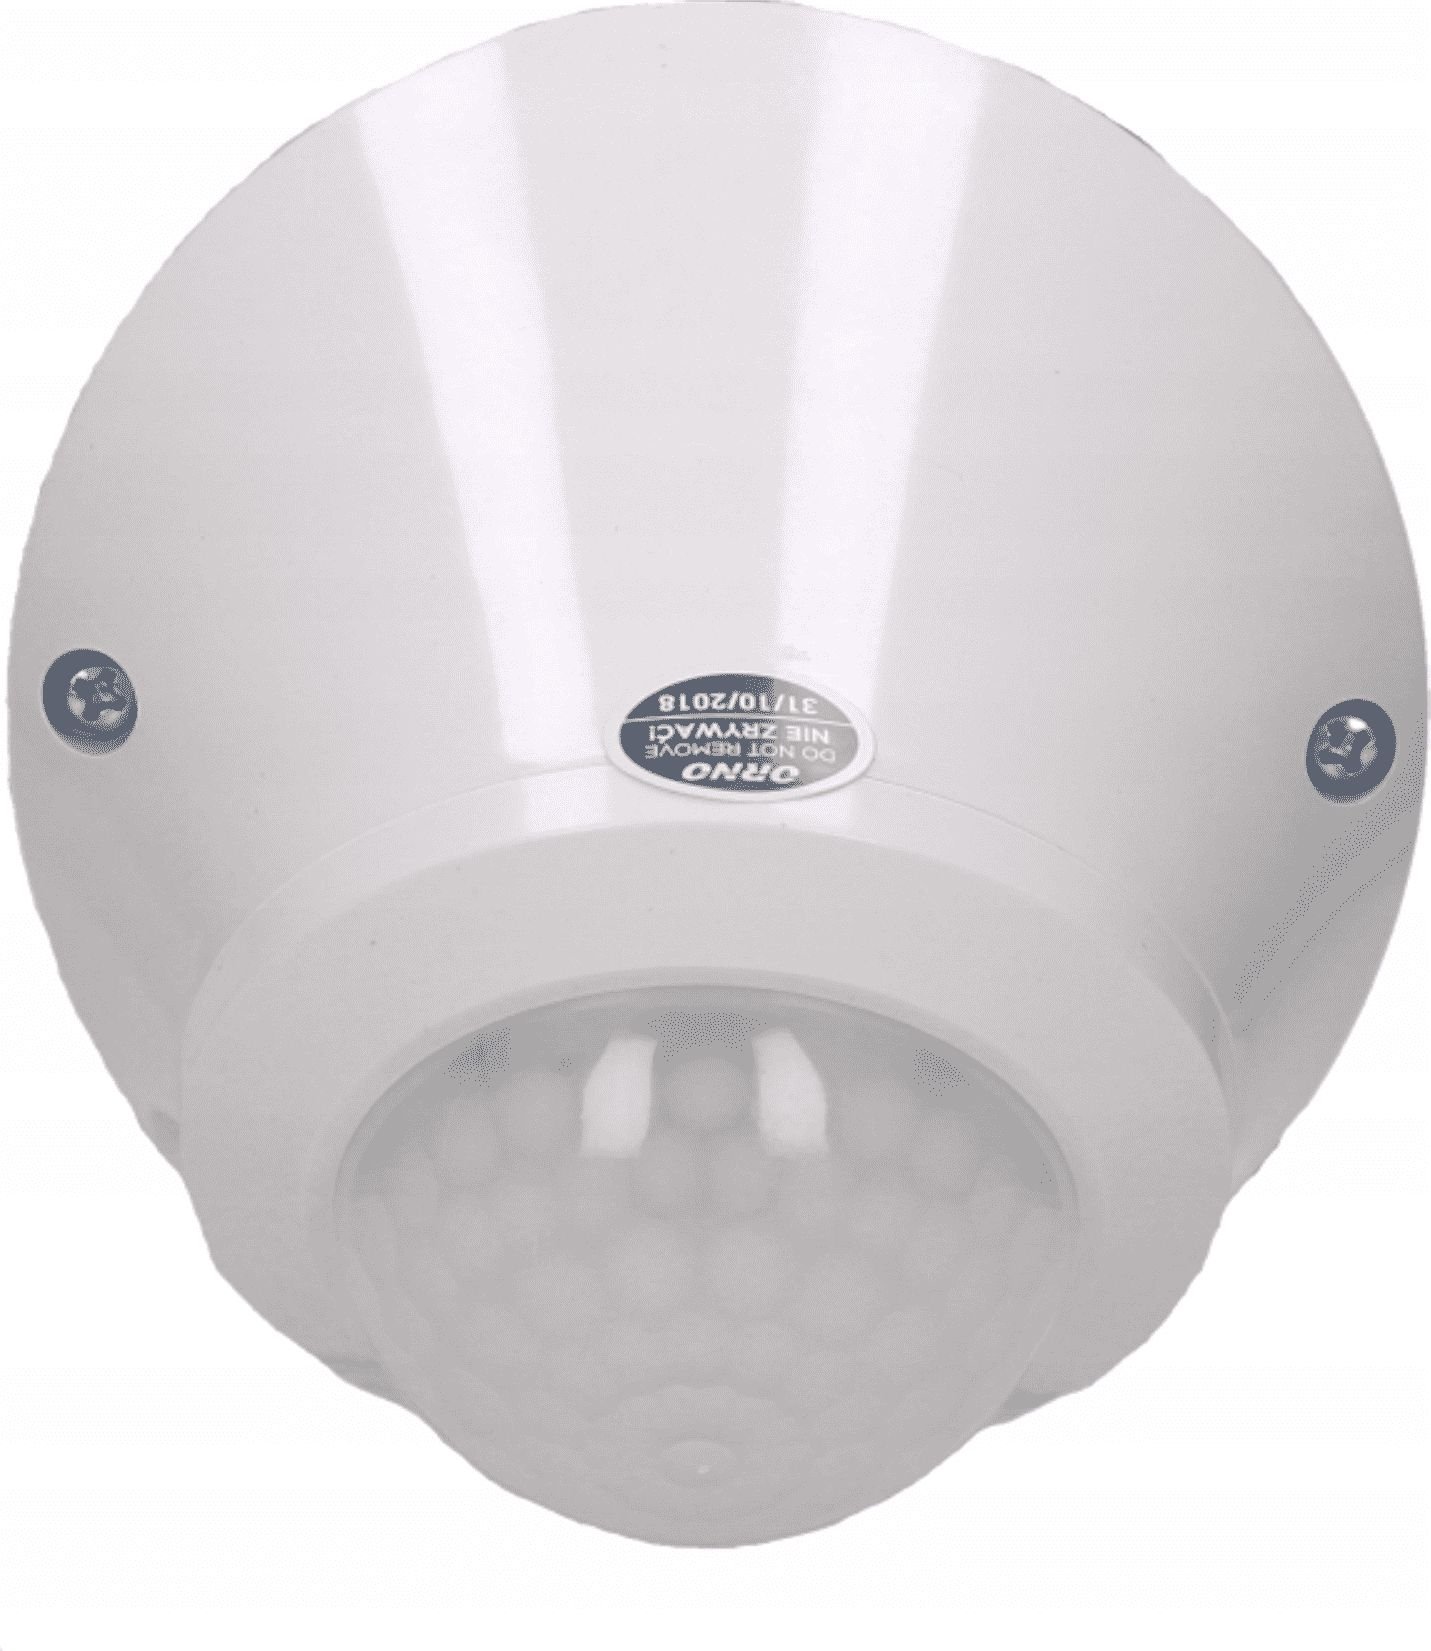 Senzor de miscare ORNO OR-CR-256, unghi detectie 180/360&amp;deg;, 800W, IP65, reglarea intensitatii luminii, alb